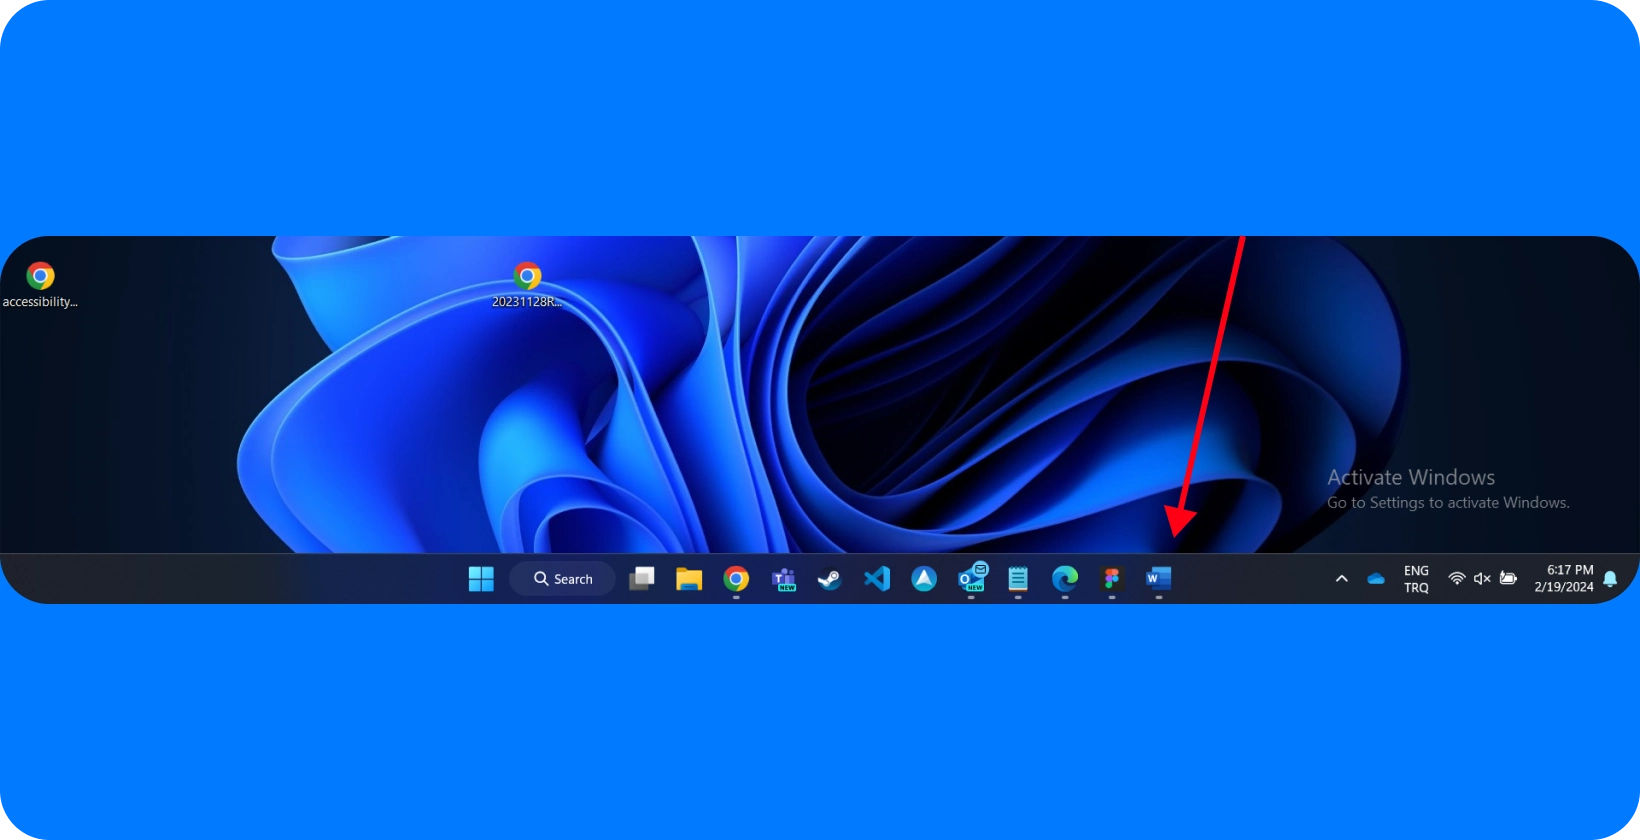 Tela da área de trabalho mostrando Windows interface com Microsoft Word ícone realçado, indicando um foco nos recursos de ditado.